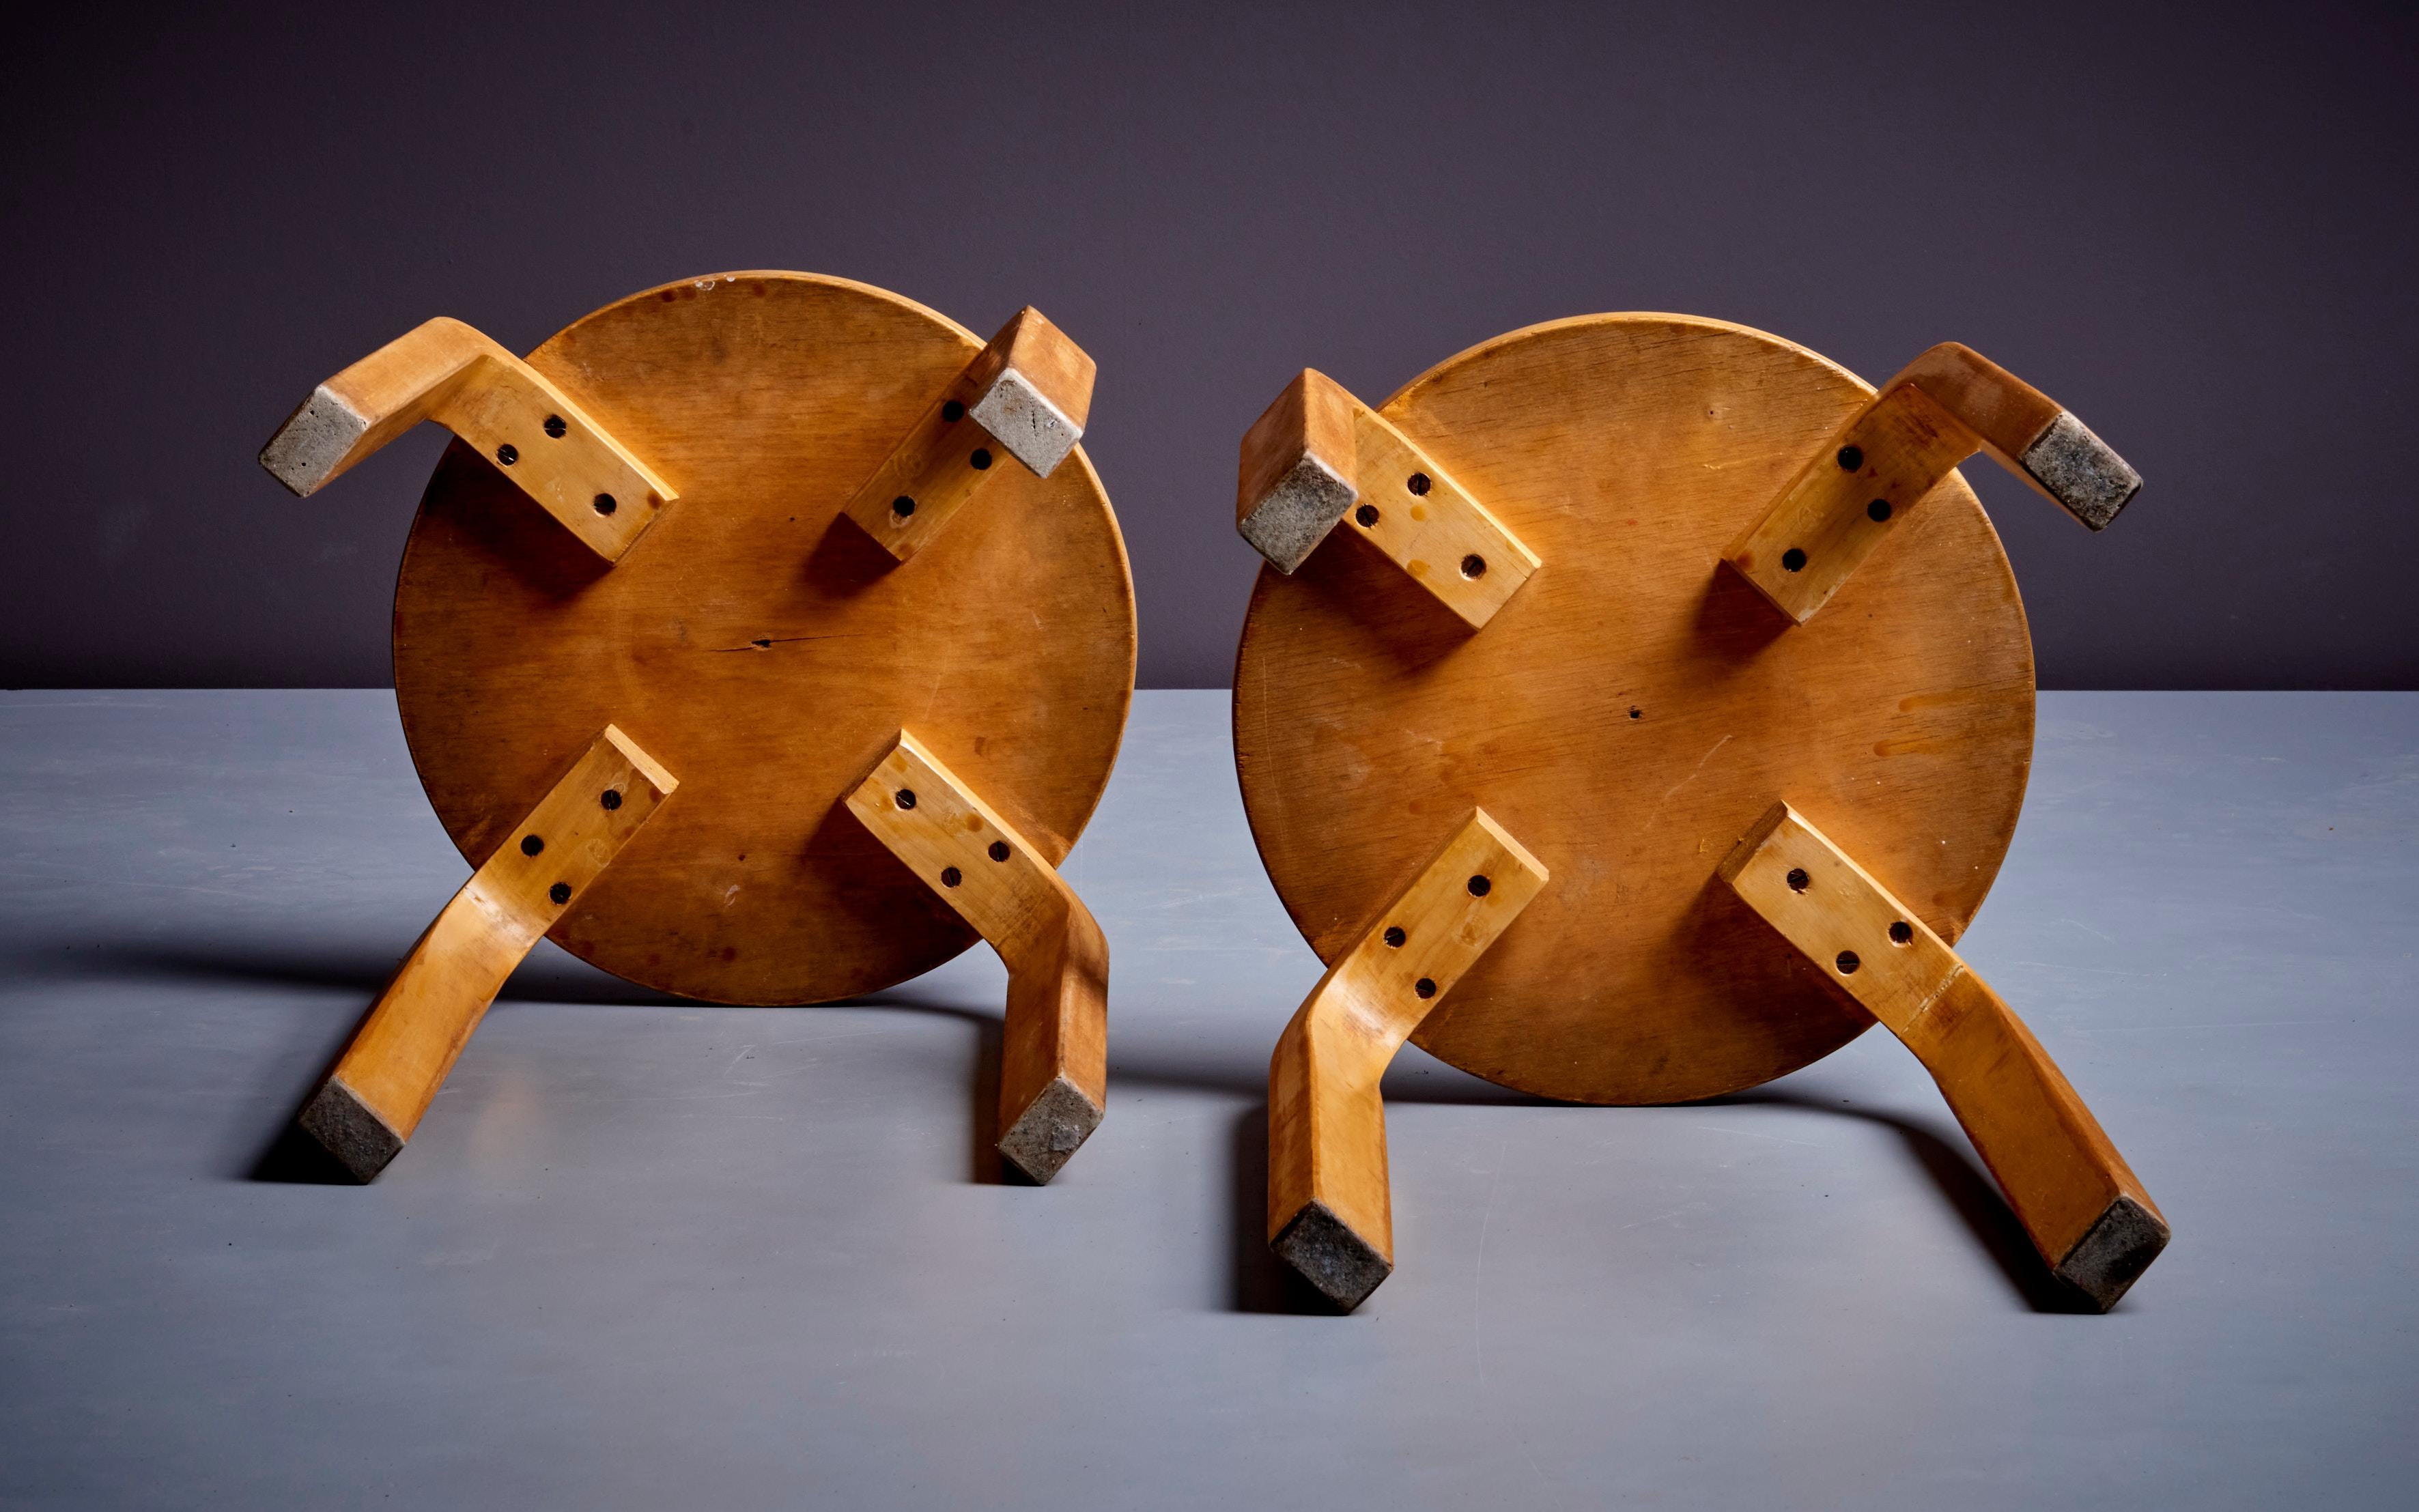 Ensemble de 2 tabourets en bois courbé pour Artek, Finlande, années 1950. Les tabourets ont une belle patine d'usage. 

Alvar Aalto (1898-1976) était un architecte, designer et urbaniste finlandais largement considéré comme l'un des architectes les